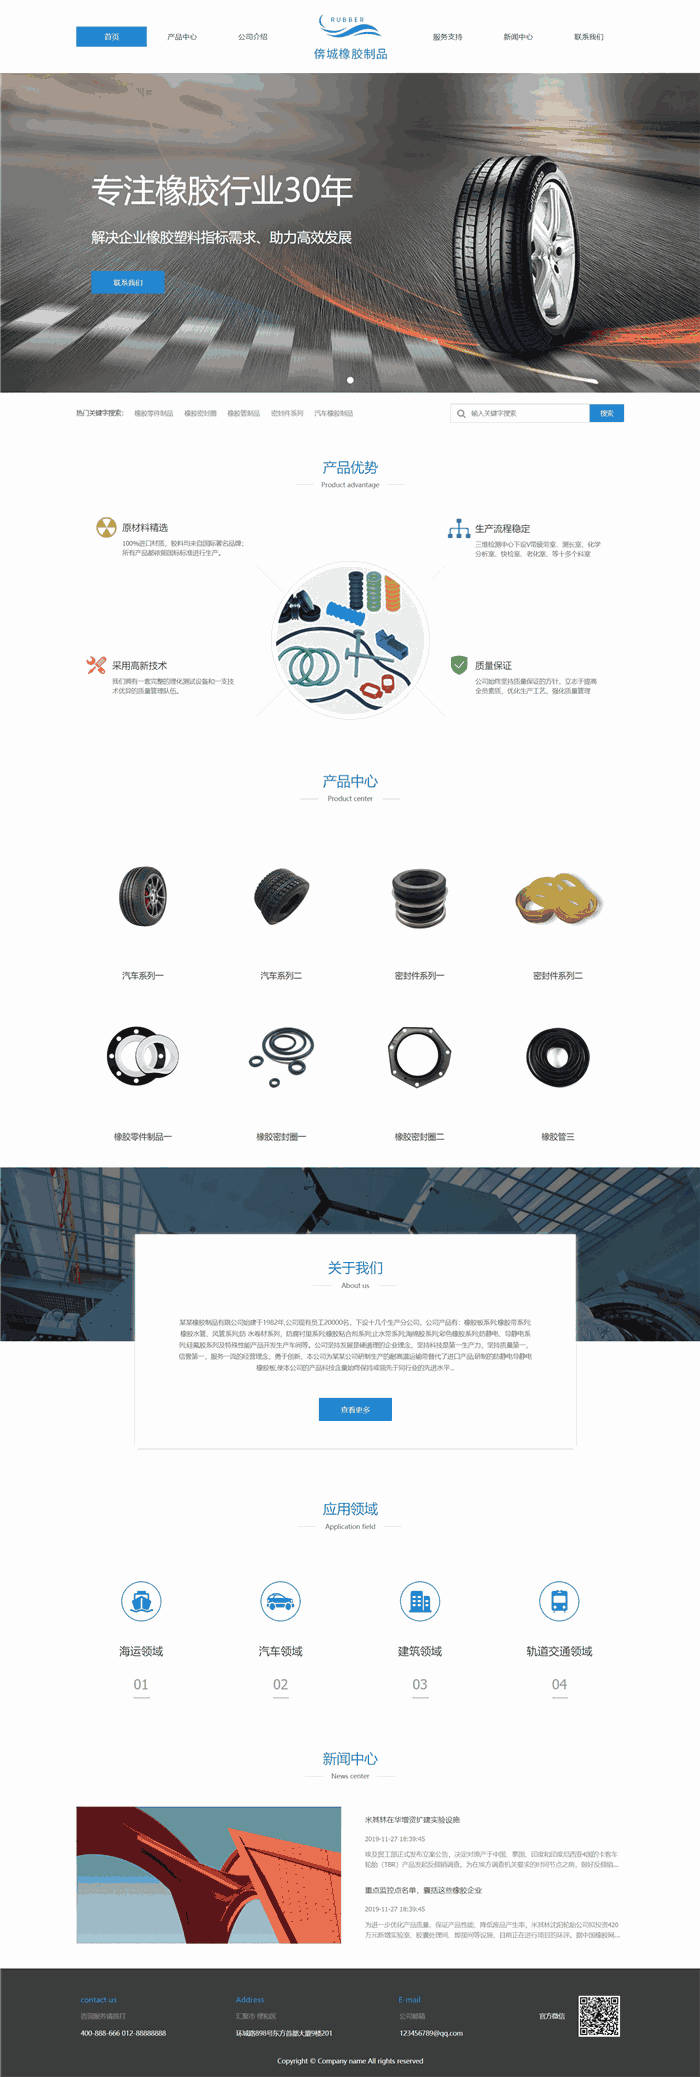 高端大气响应式化学化工塑料橡胶制品网站模板(PC+手机站)预览图